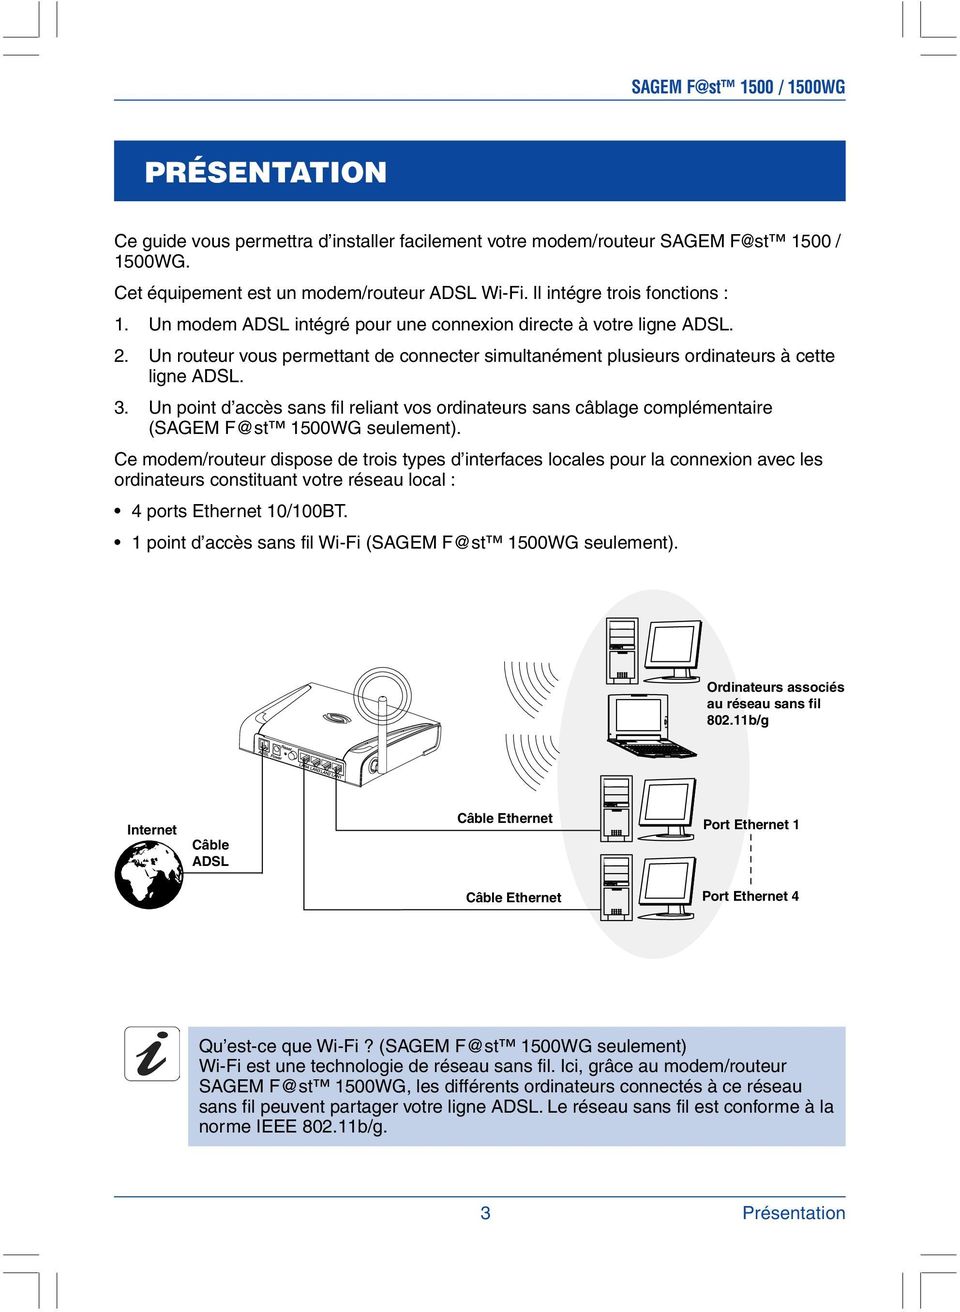 Un point d accès sans fil reliant vos ordinateurs sans câblage complémentaire (SAGEM F@st 1500WG seulement).